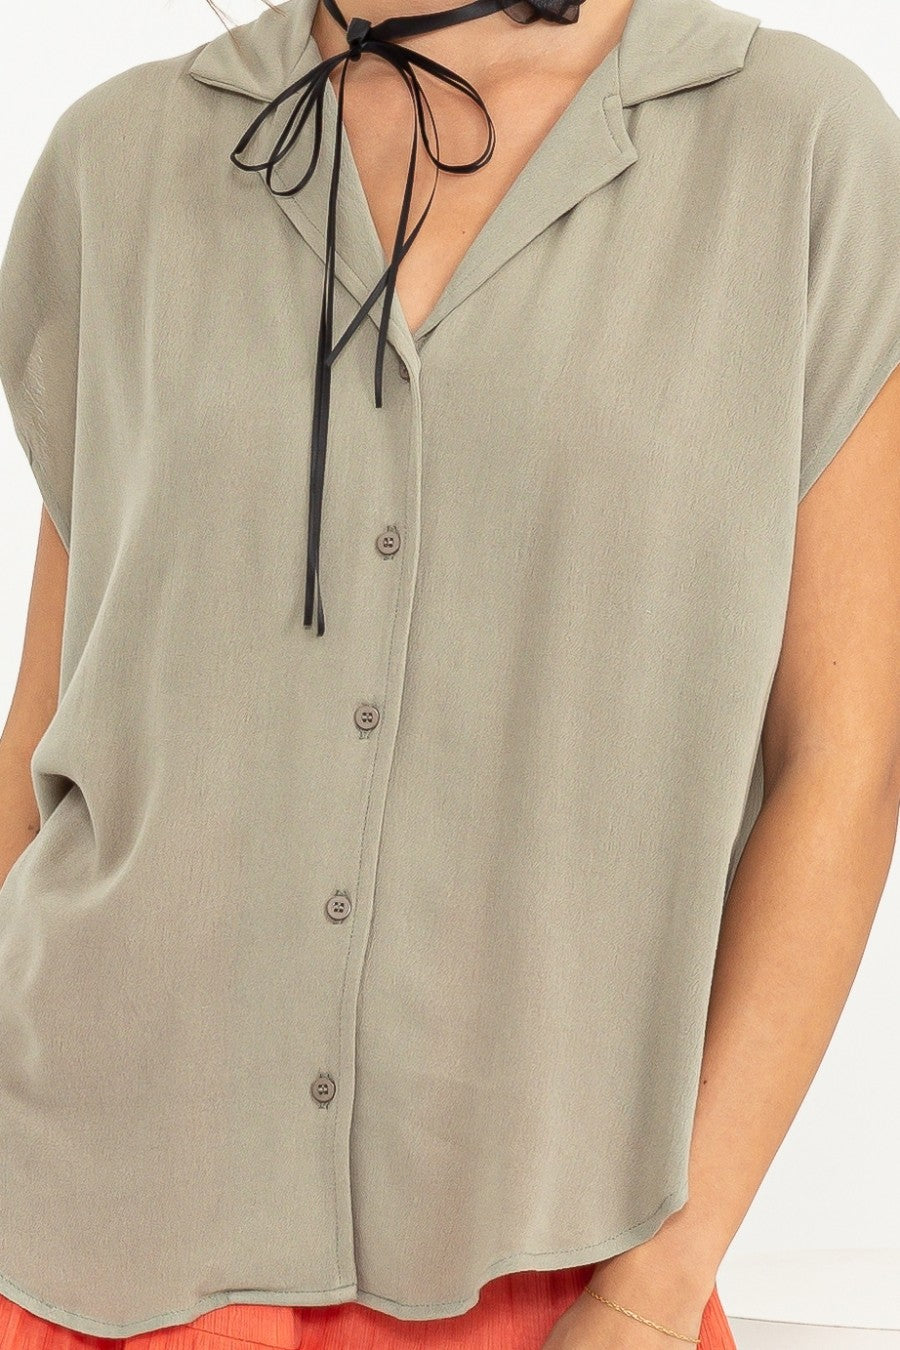 Carissa Short Sleeve Top - KC Outfitter